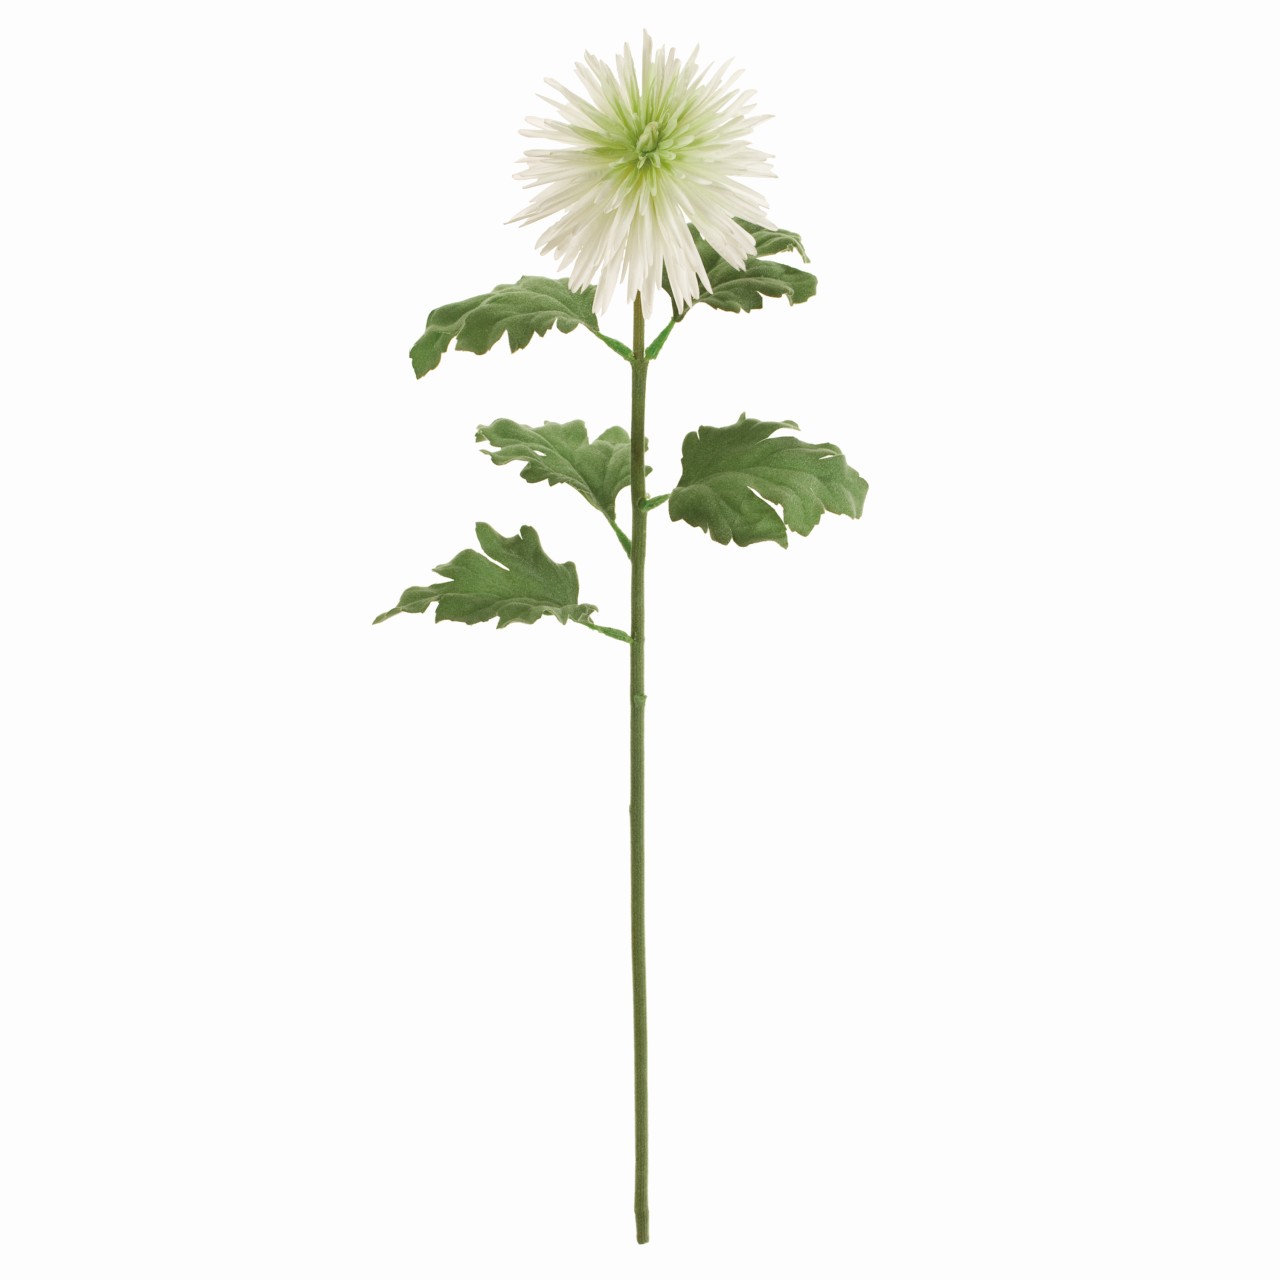 マイフラ 通販 Magiq 麗華菊 ホワイトグリーン アーティフィシャルフラワー 造花 Fm 001 マム 菊 ホワイトグリーン Magiq アーティフィシャルフラワー 造花 全国にmagiq 花器 花資材などをお届けします